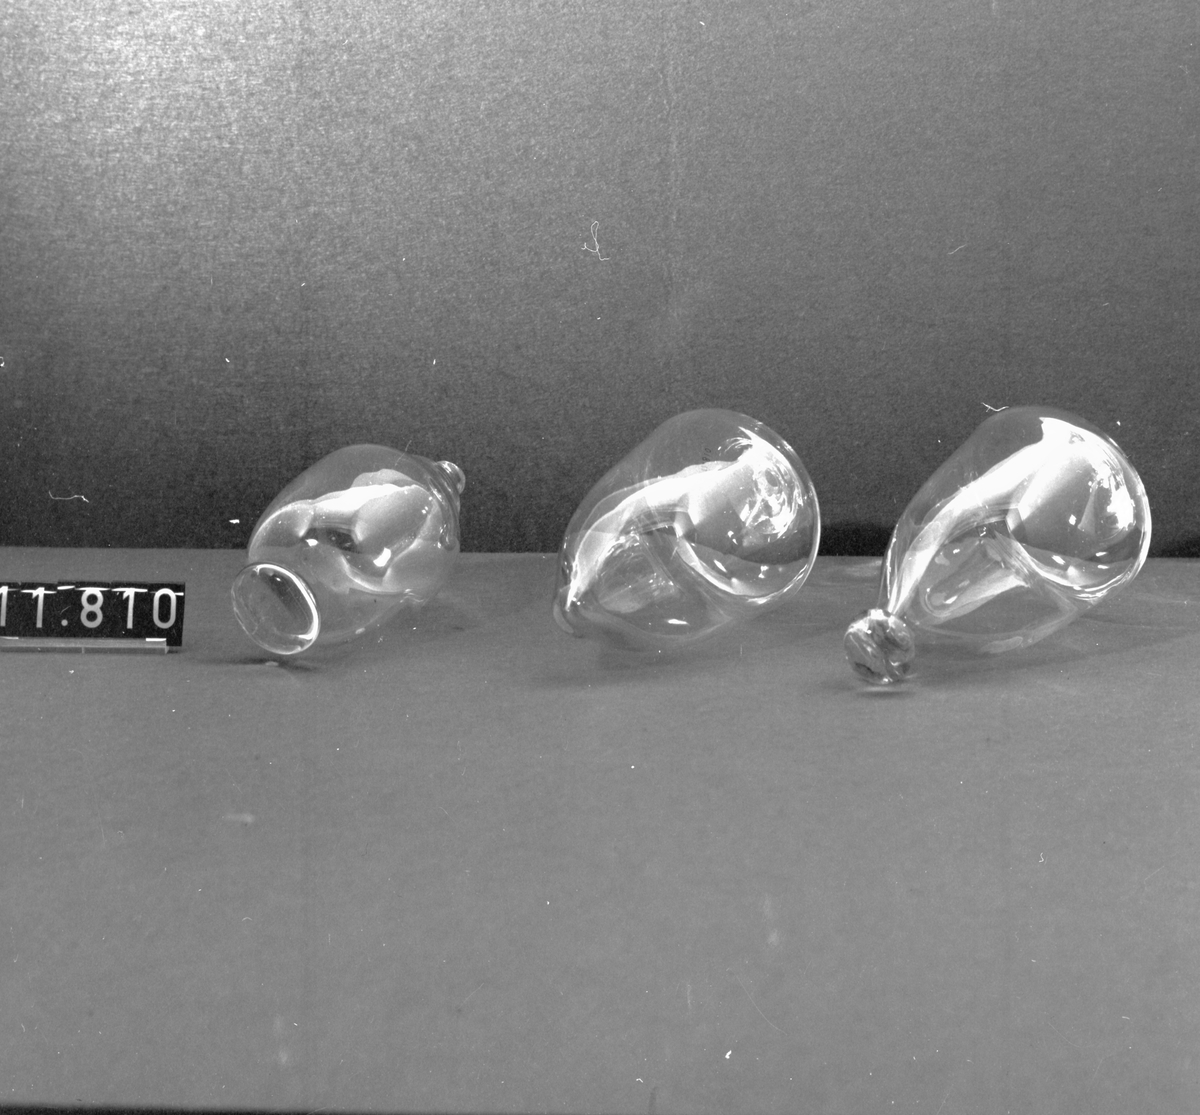 Demonstrationsserie av 8 ämnen i olika stadier av tillverkningen av ett vinglas på fot, slipad kristall. Höjd 160-250 mm.